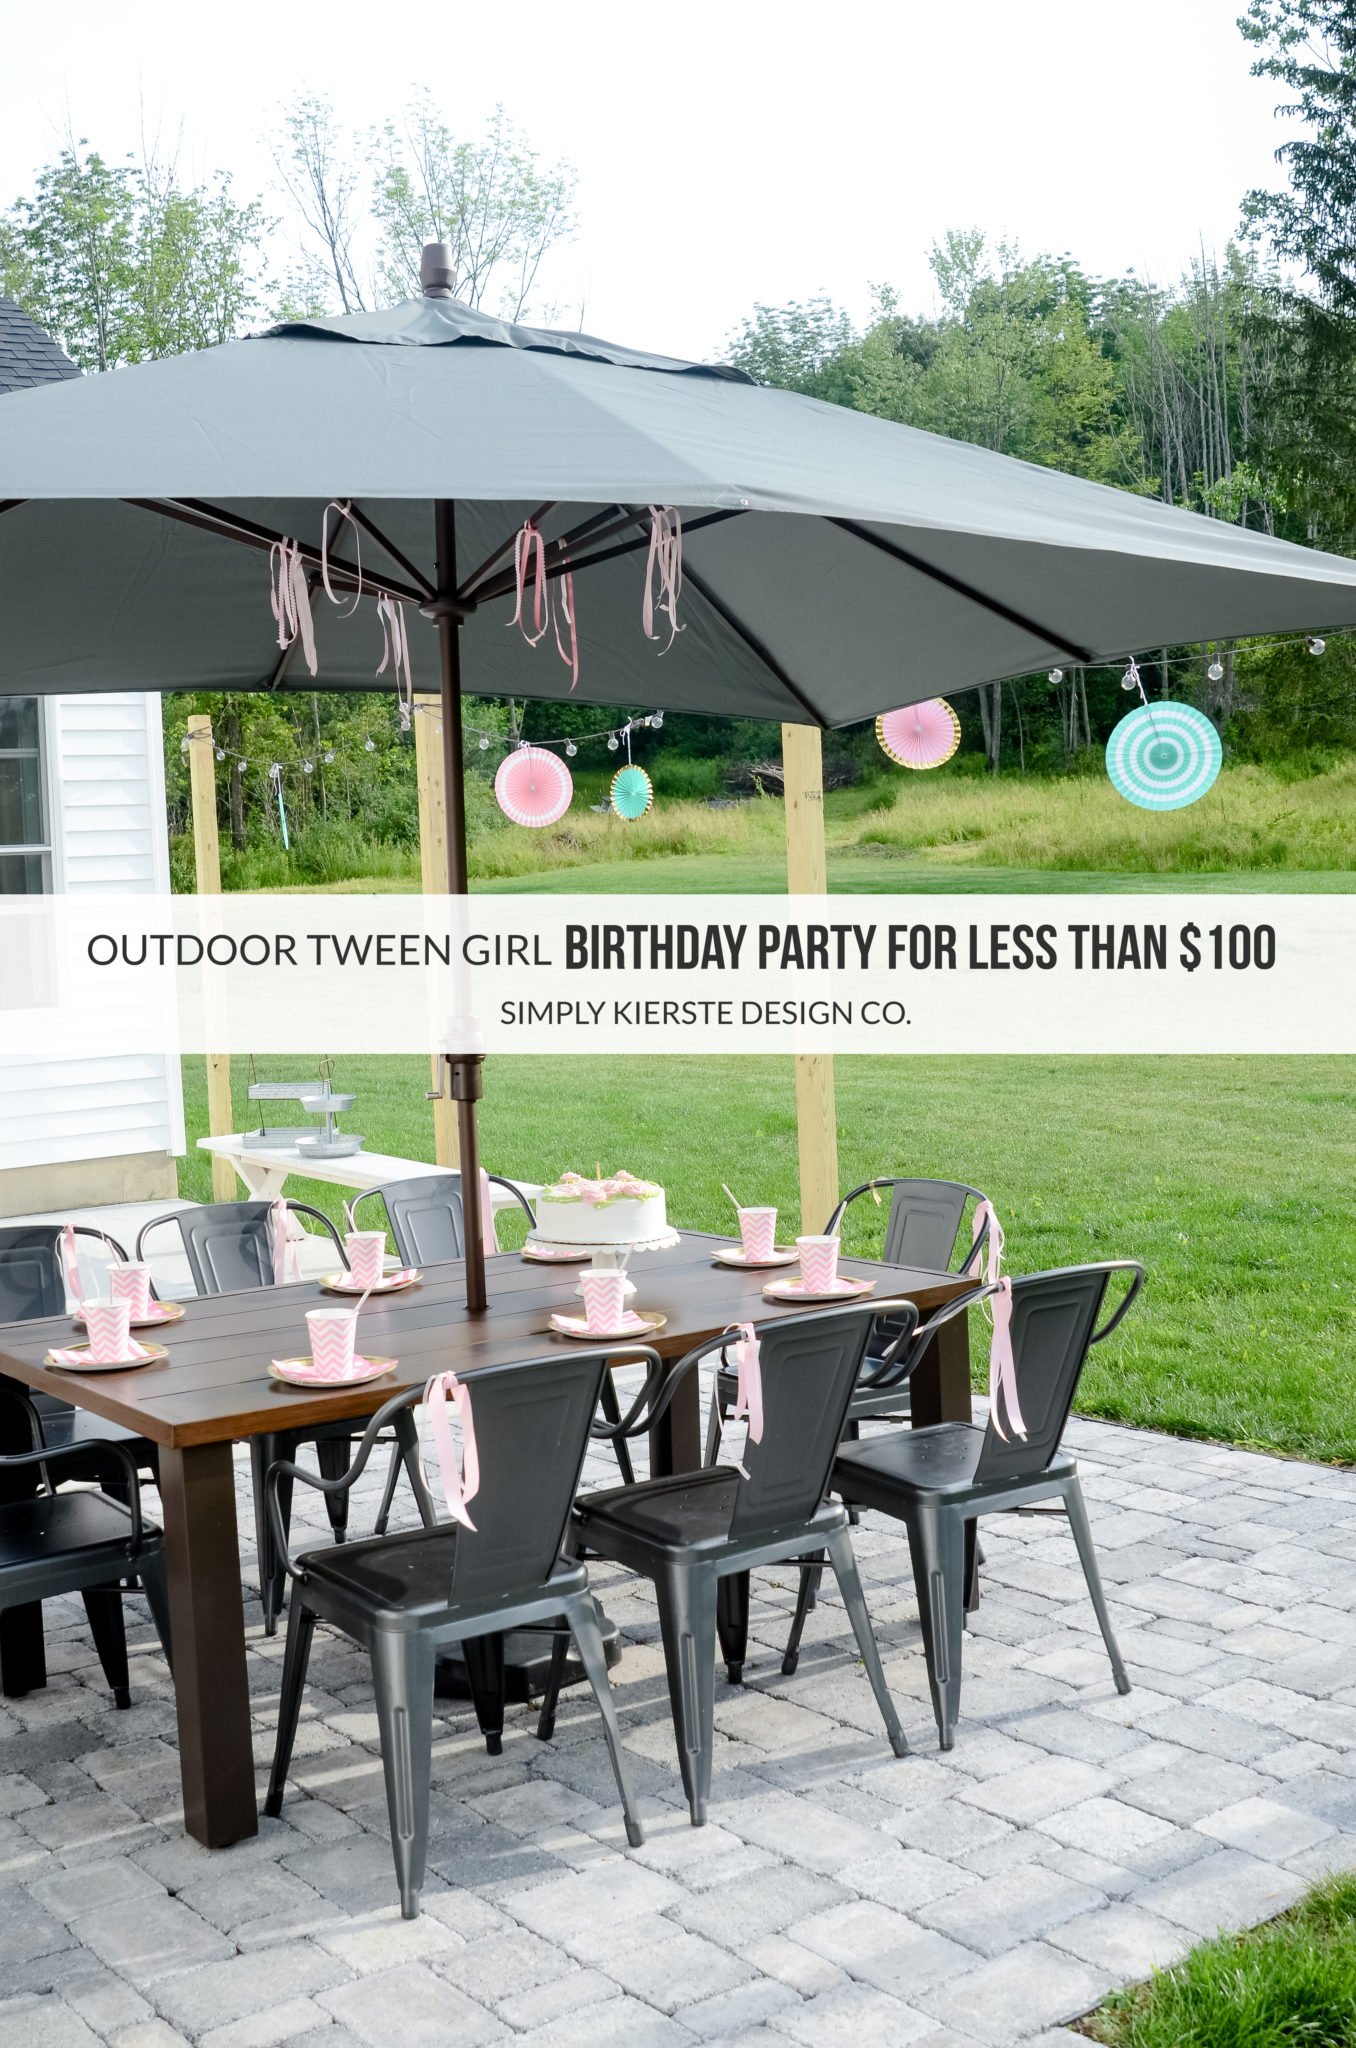 Outdoor Tween Girl Party for under $100 | oldsaltfarm.com